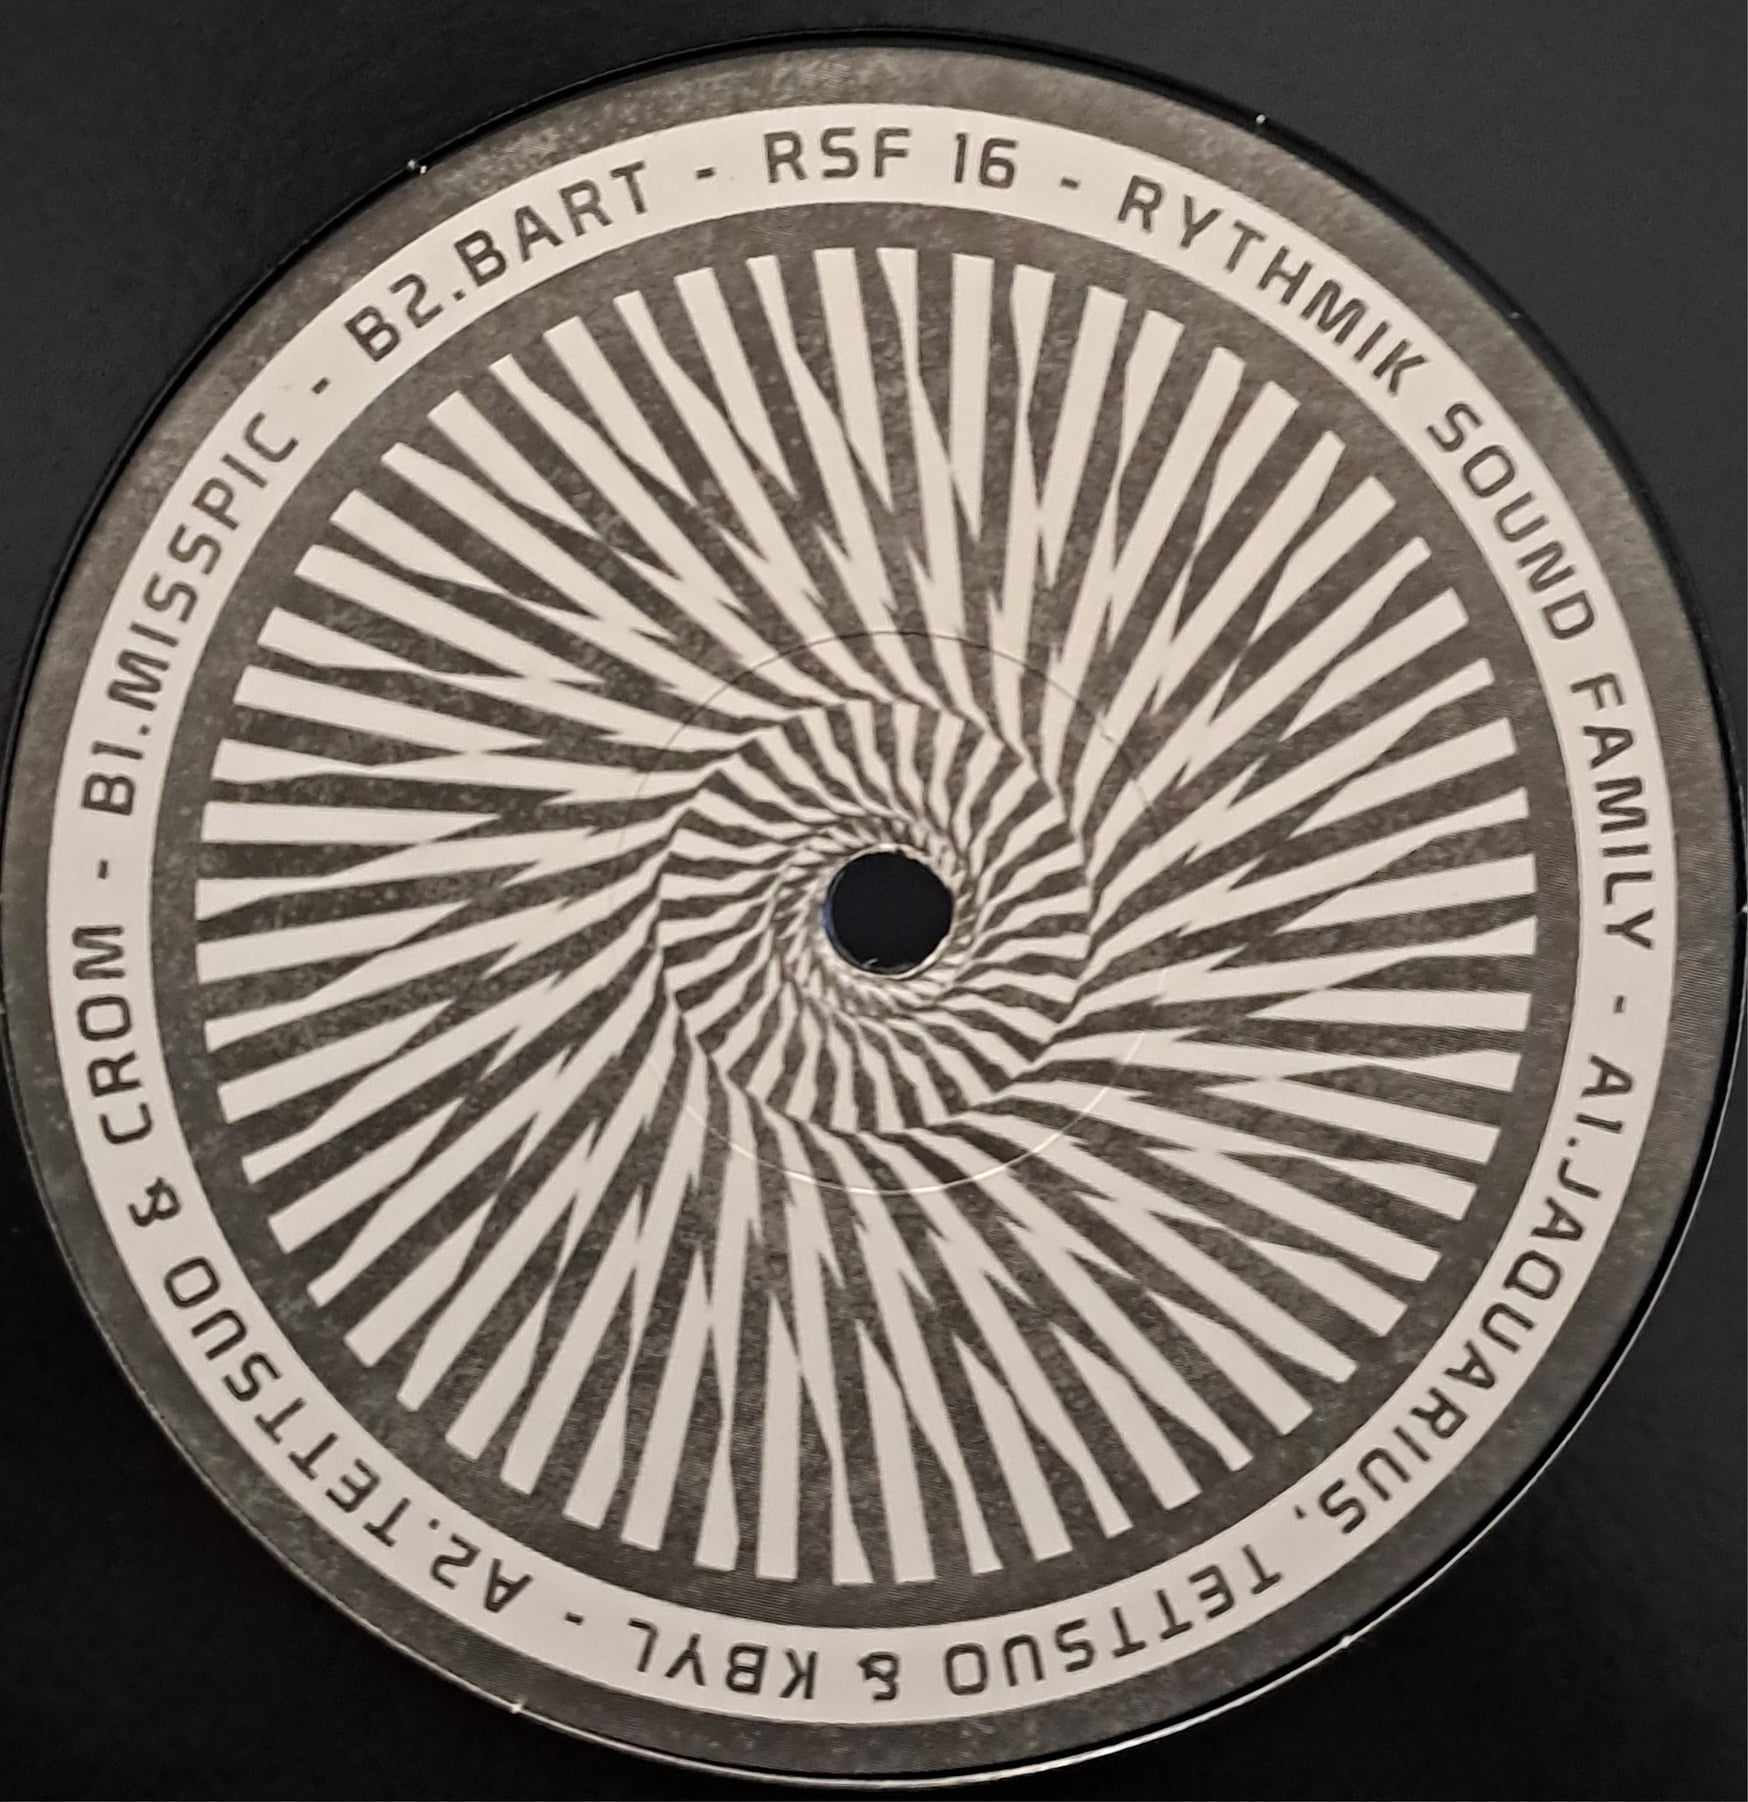 RSF 16 (toute dernière copie en stock) - vinyle freetekno